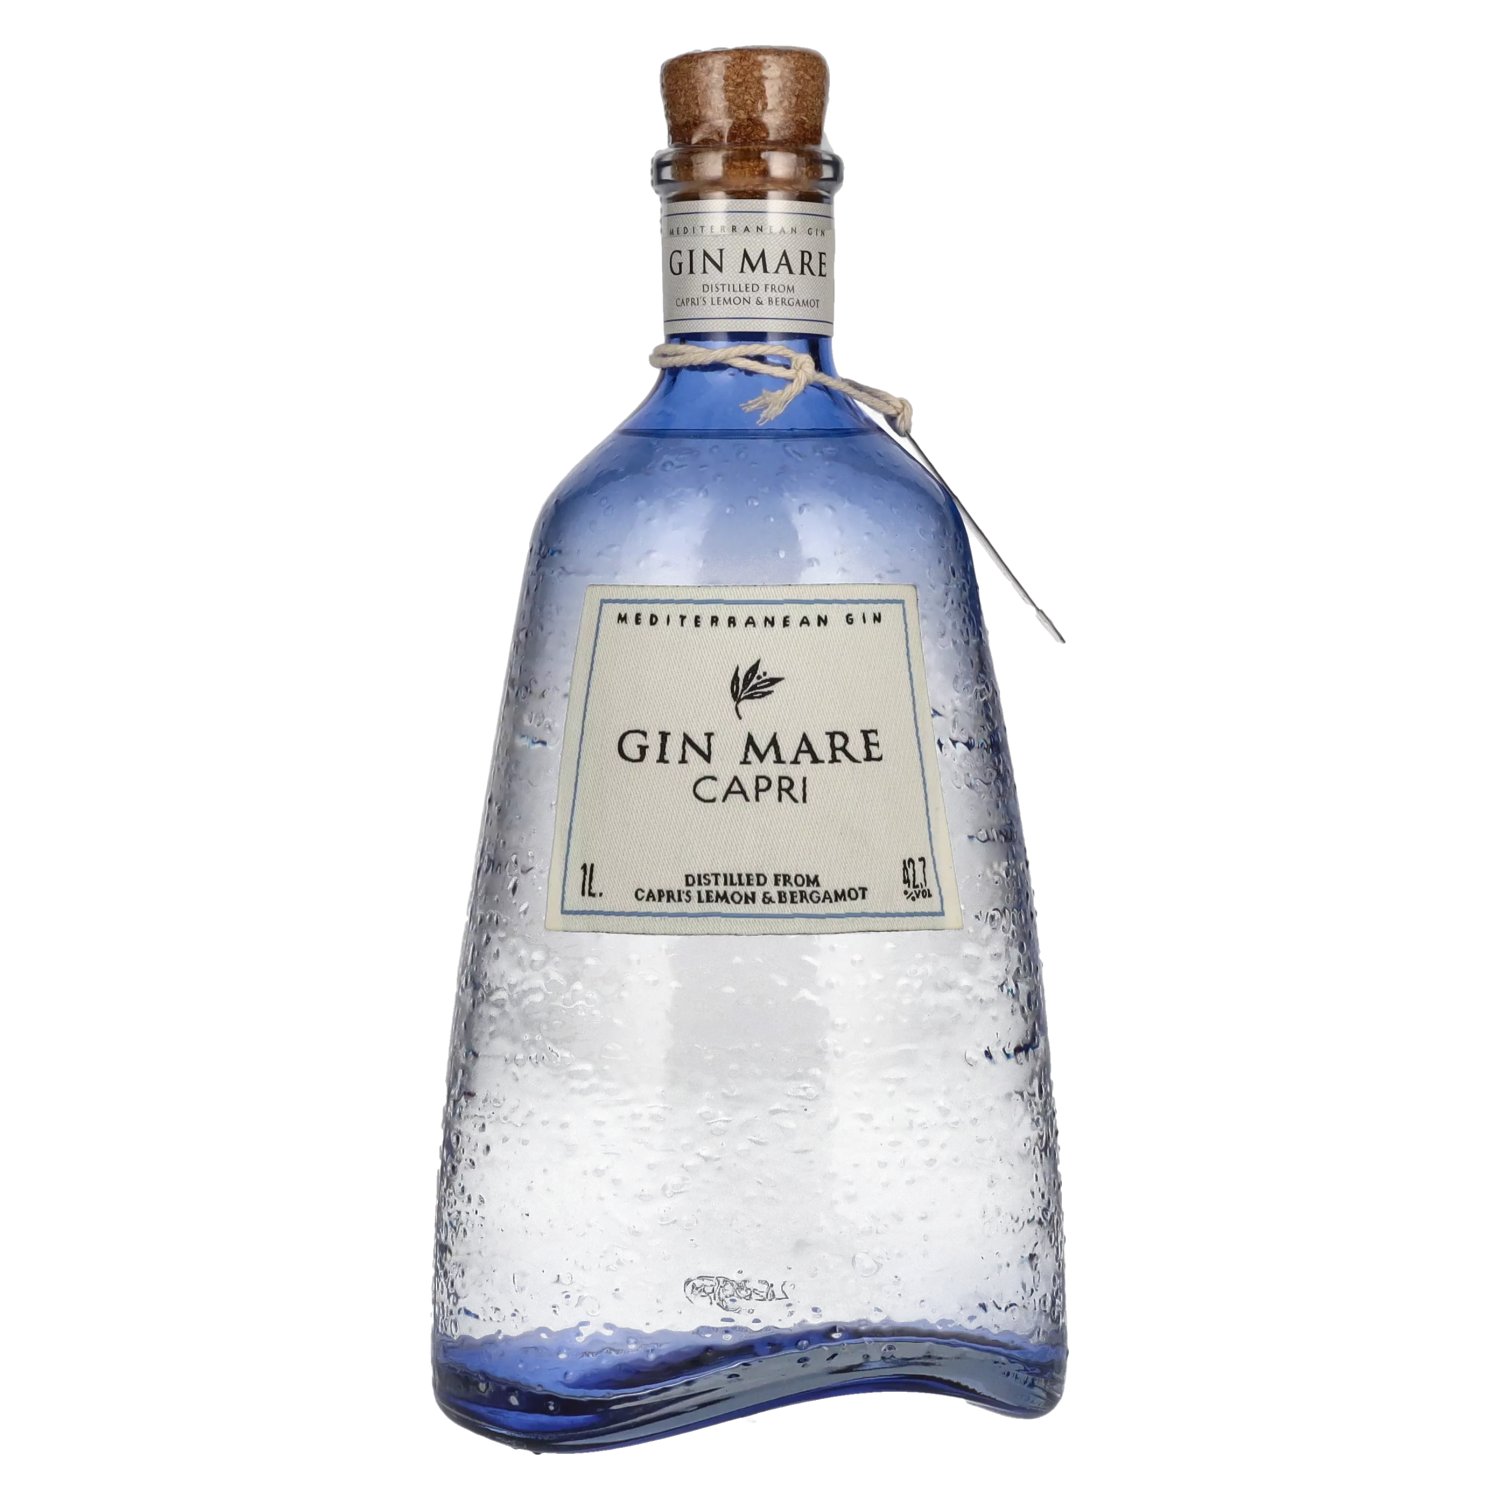 1l Mediterranean Gin Capri 42,7% Gin Edition Vol. Mare Limited